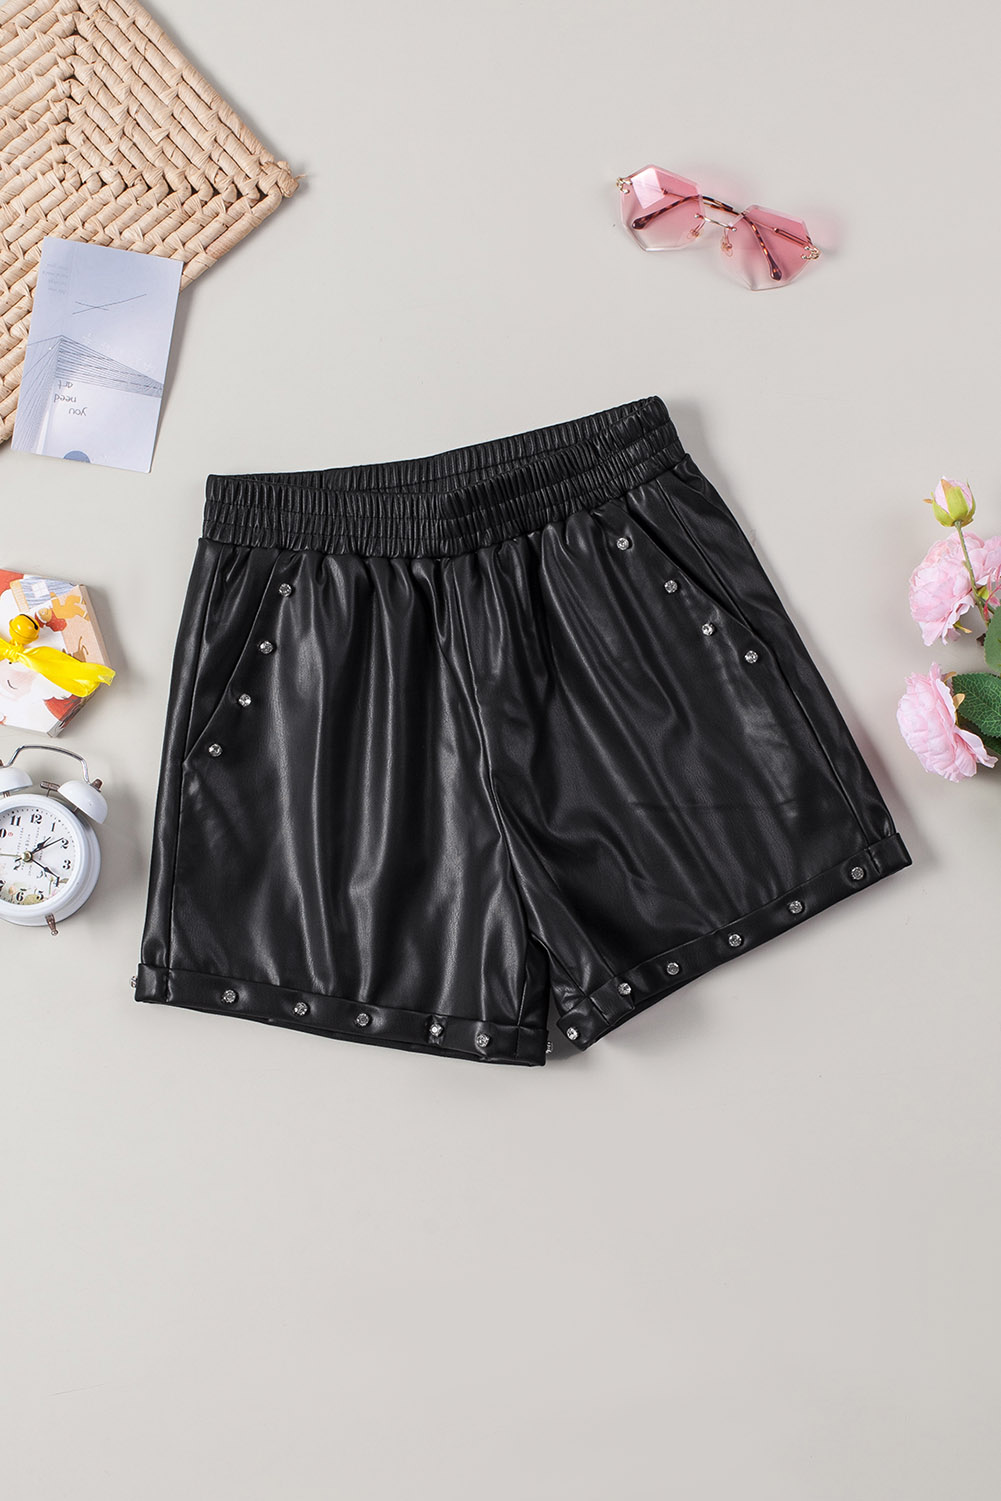 KAIYYY Women's Beaded Faux Leather High Waist Shorts (US 4-6)S ...